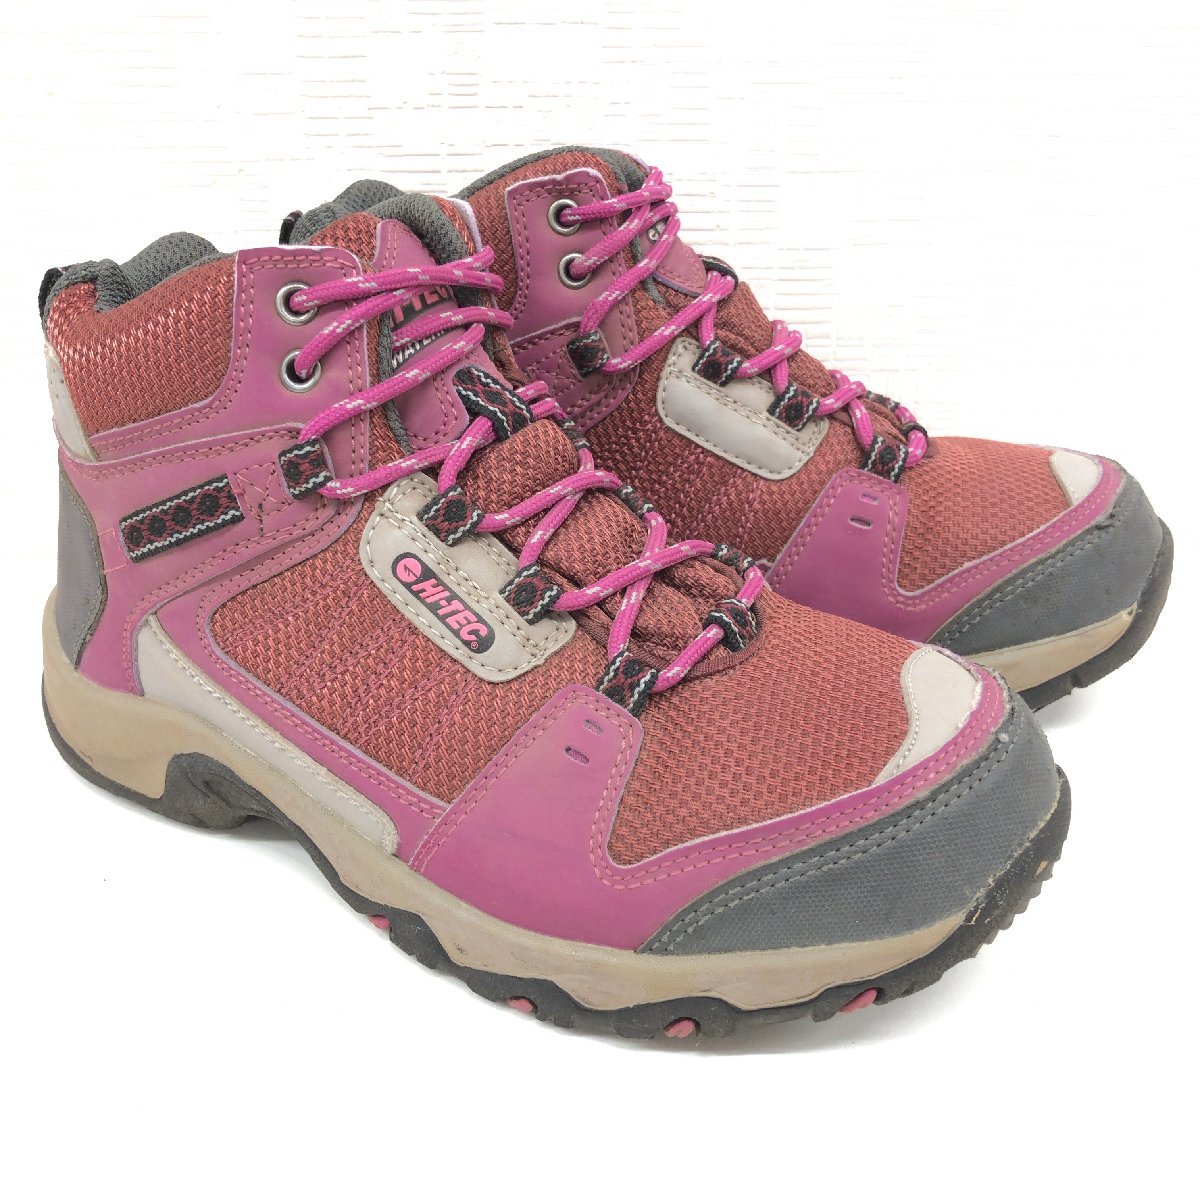 ●HI-TEC ハイテック ウォータープルーフ トレッキングシューズ 22.5cm ピンク系 アウトドアシューズ 登山靴 ハイキング レディース 女性用の画像3